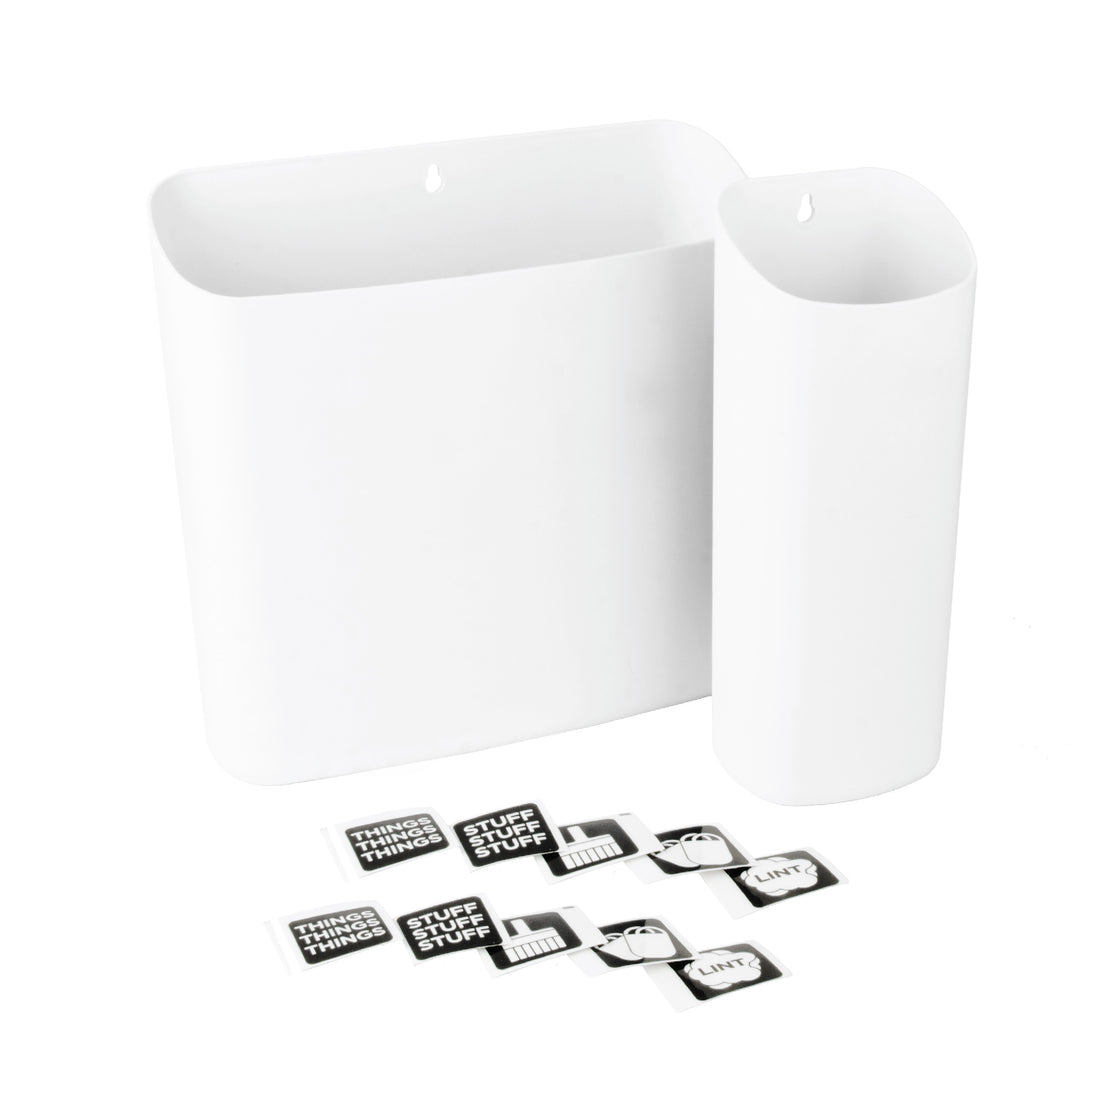 Magnetic Lint Bin Combo Pack (White) - Utility sinks vanites Tehila